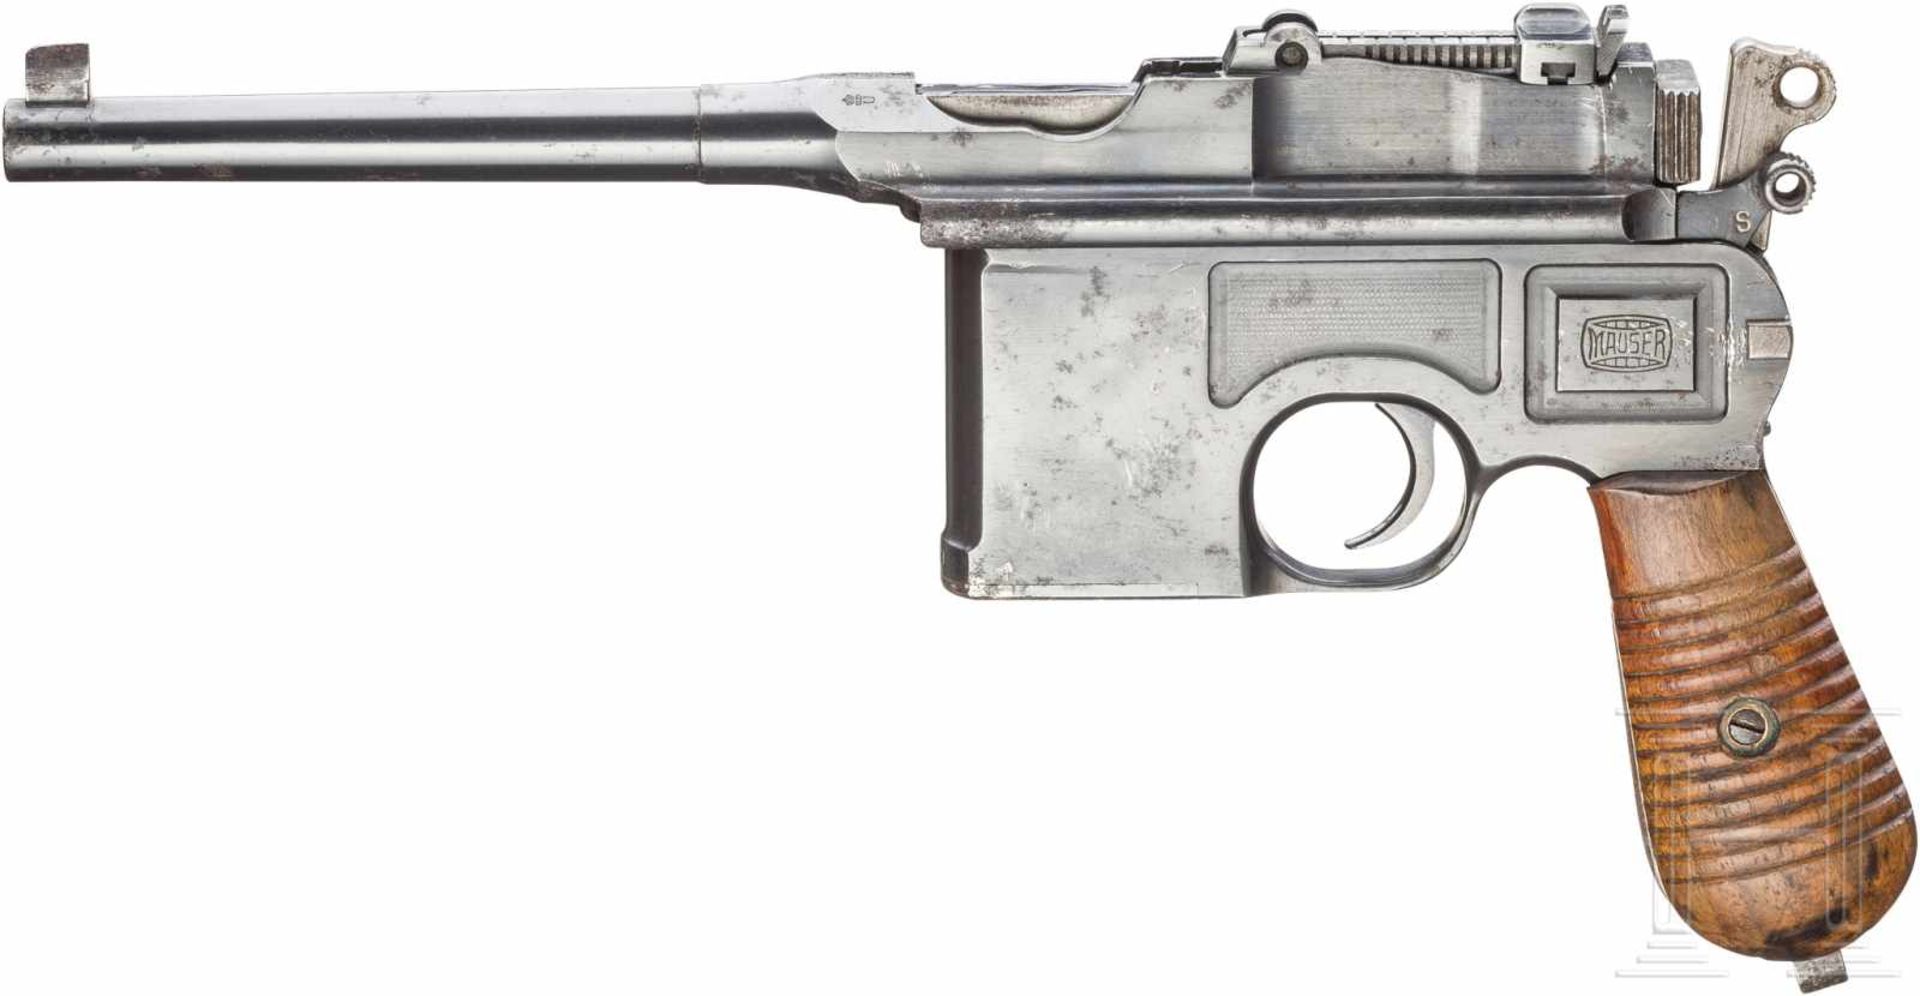 Mauser Mod. 1930Kal. 7,63 Mauser, Nr. 916460, Nummerngleich. Fast blanker Lauf, Länge 130 mm.